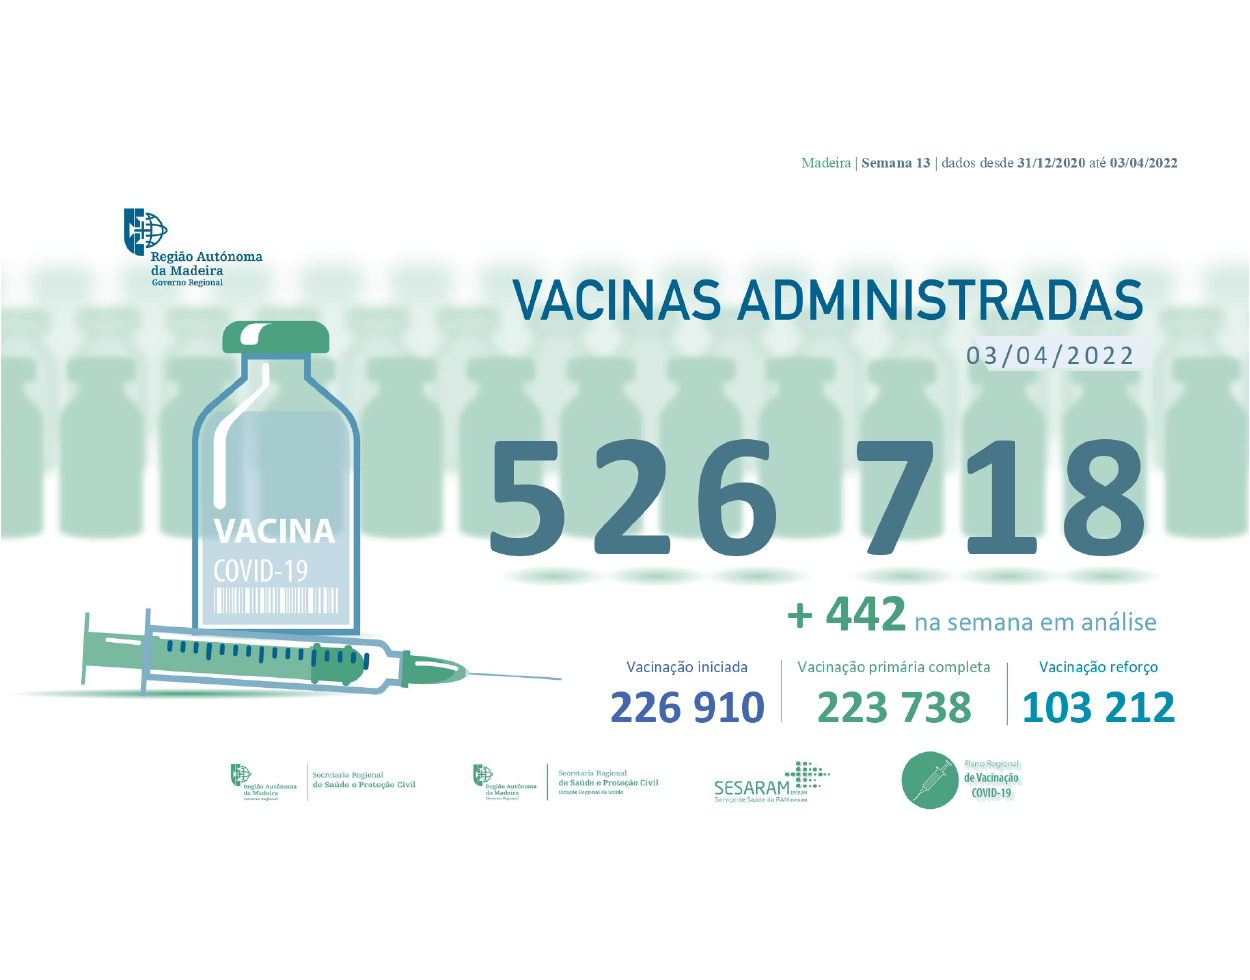 Administradas 526 718 vacinas contra a COVID-19 na RAM